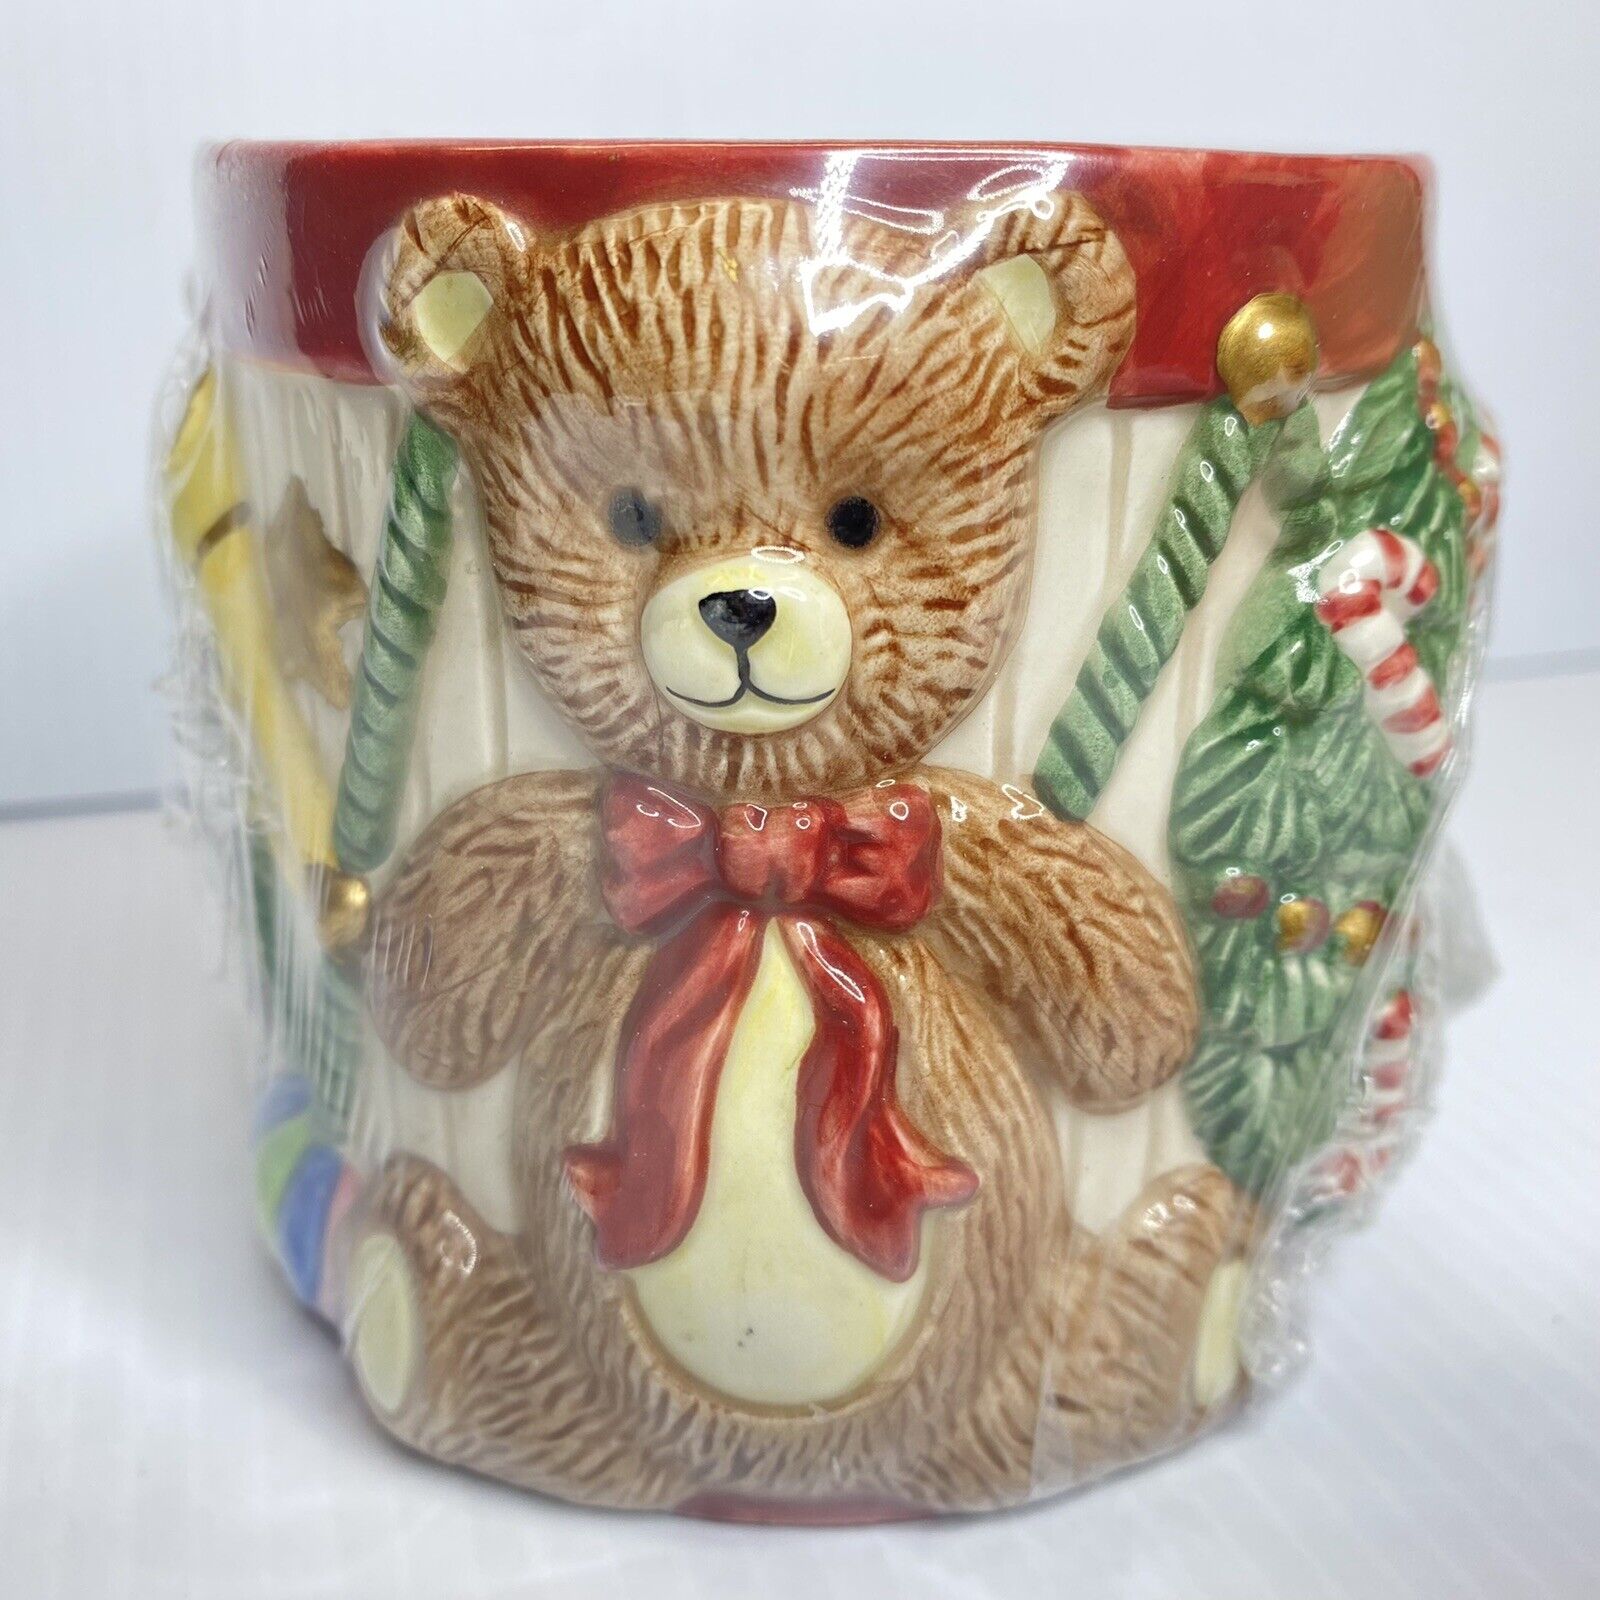 Fitz & Floyd Candle Christmas Drum Train Teddy  Bear Toys New With Box NIB